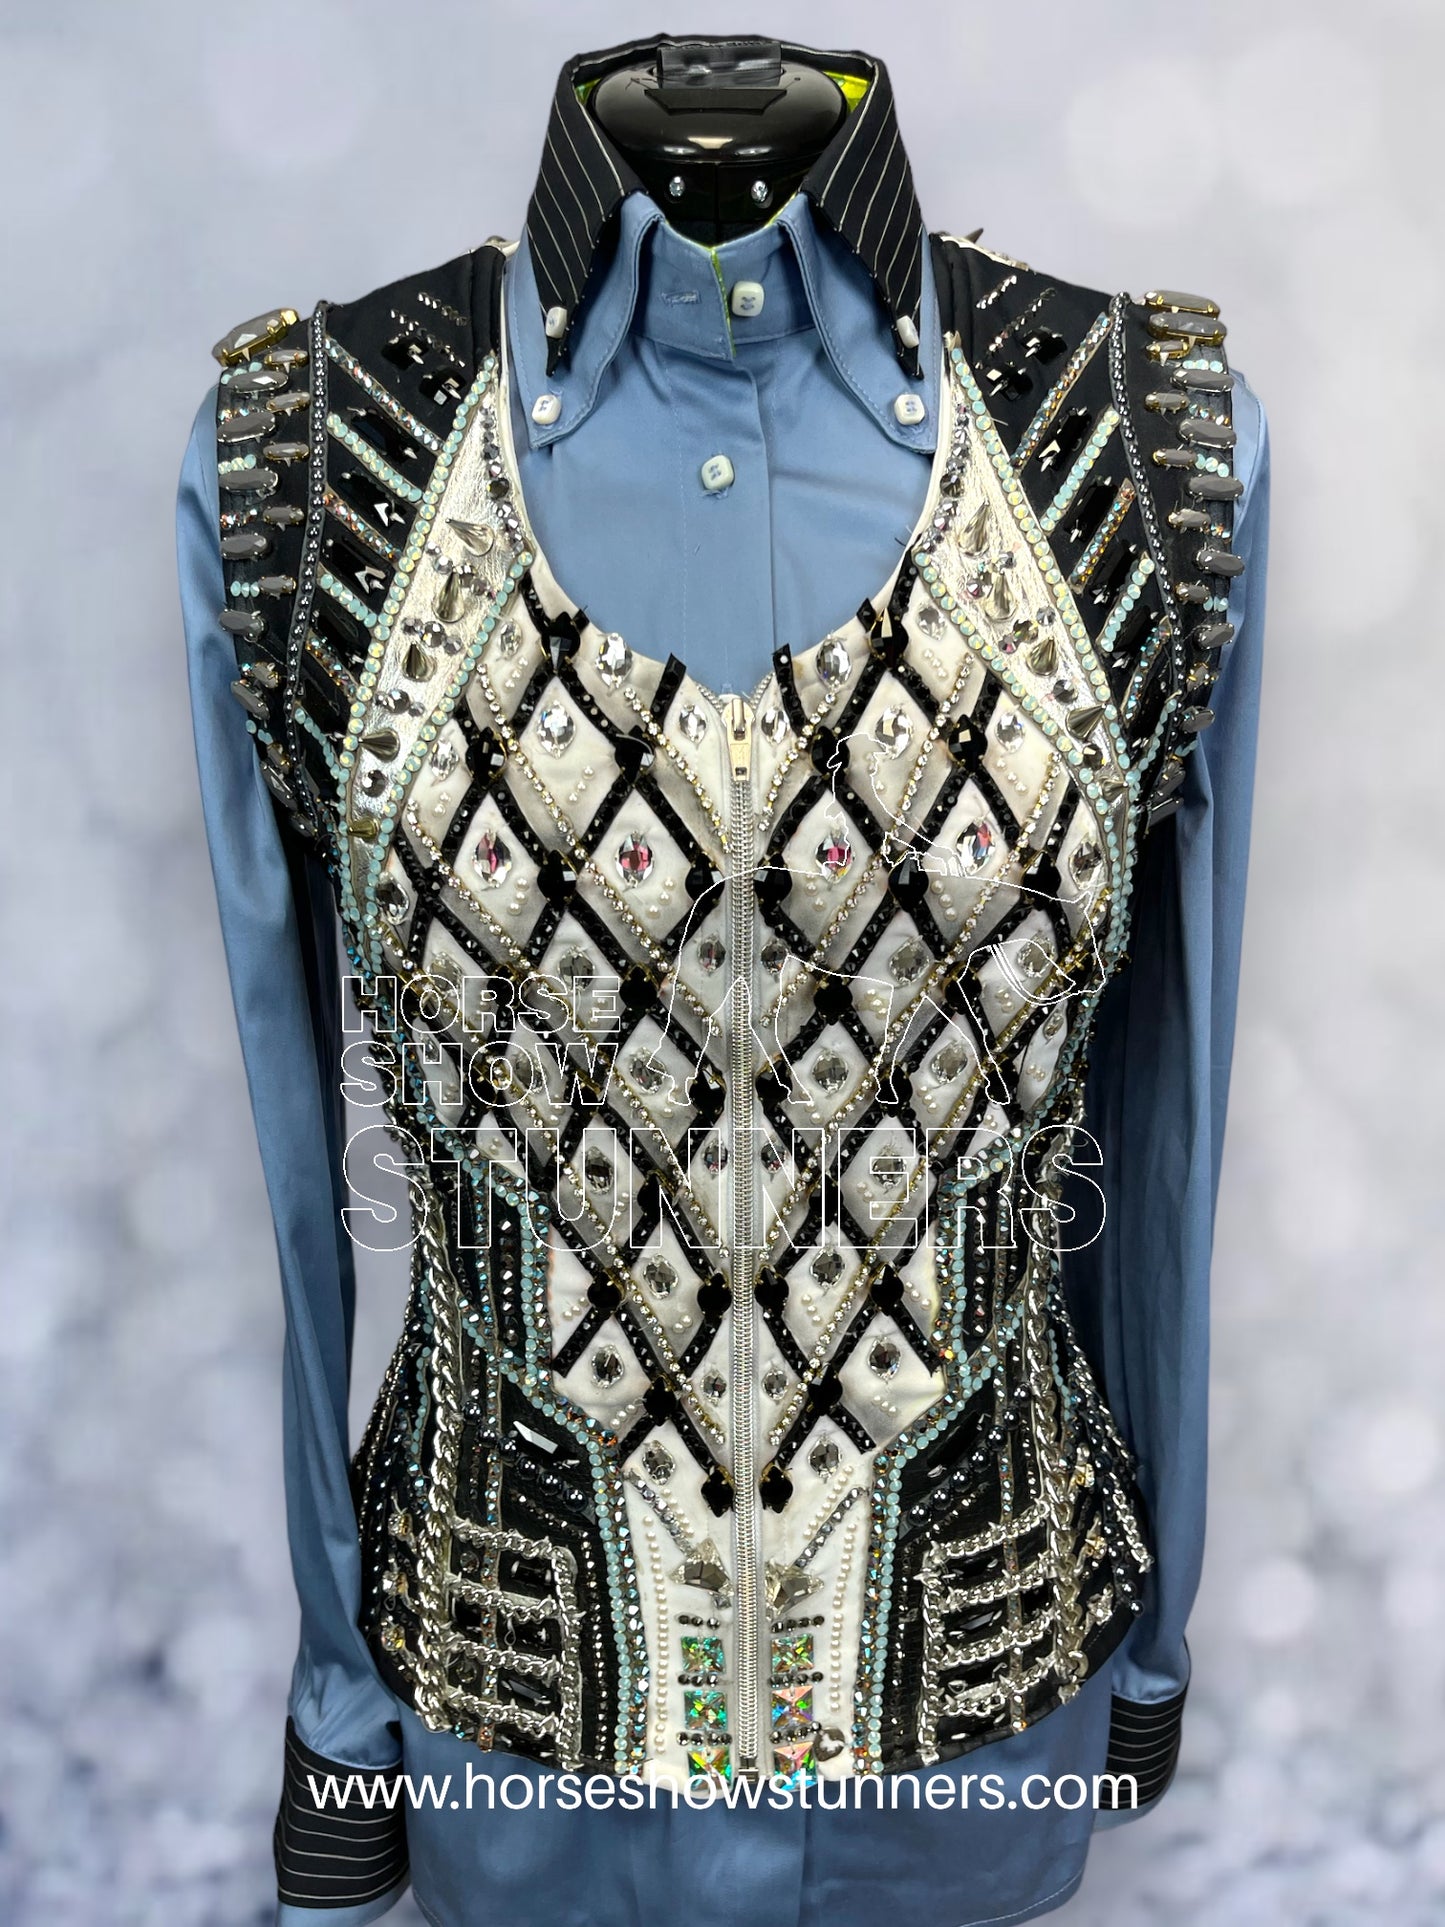 La Collezione di Anna vest / Shirt Set #1891